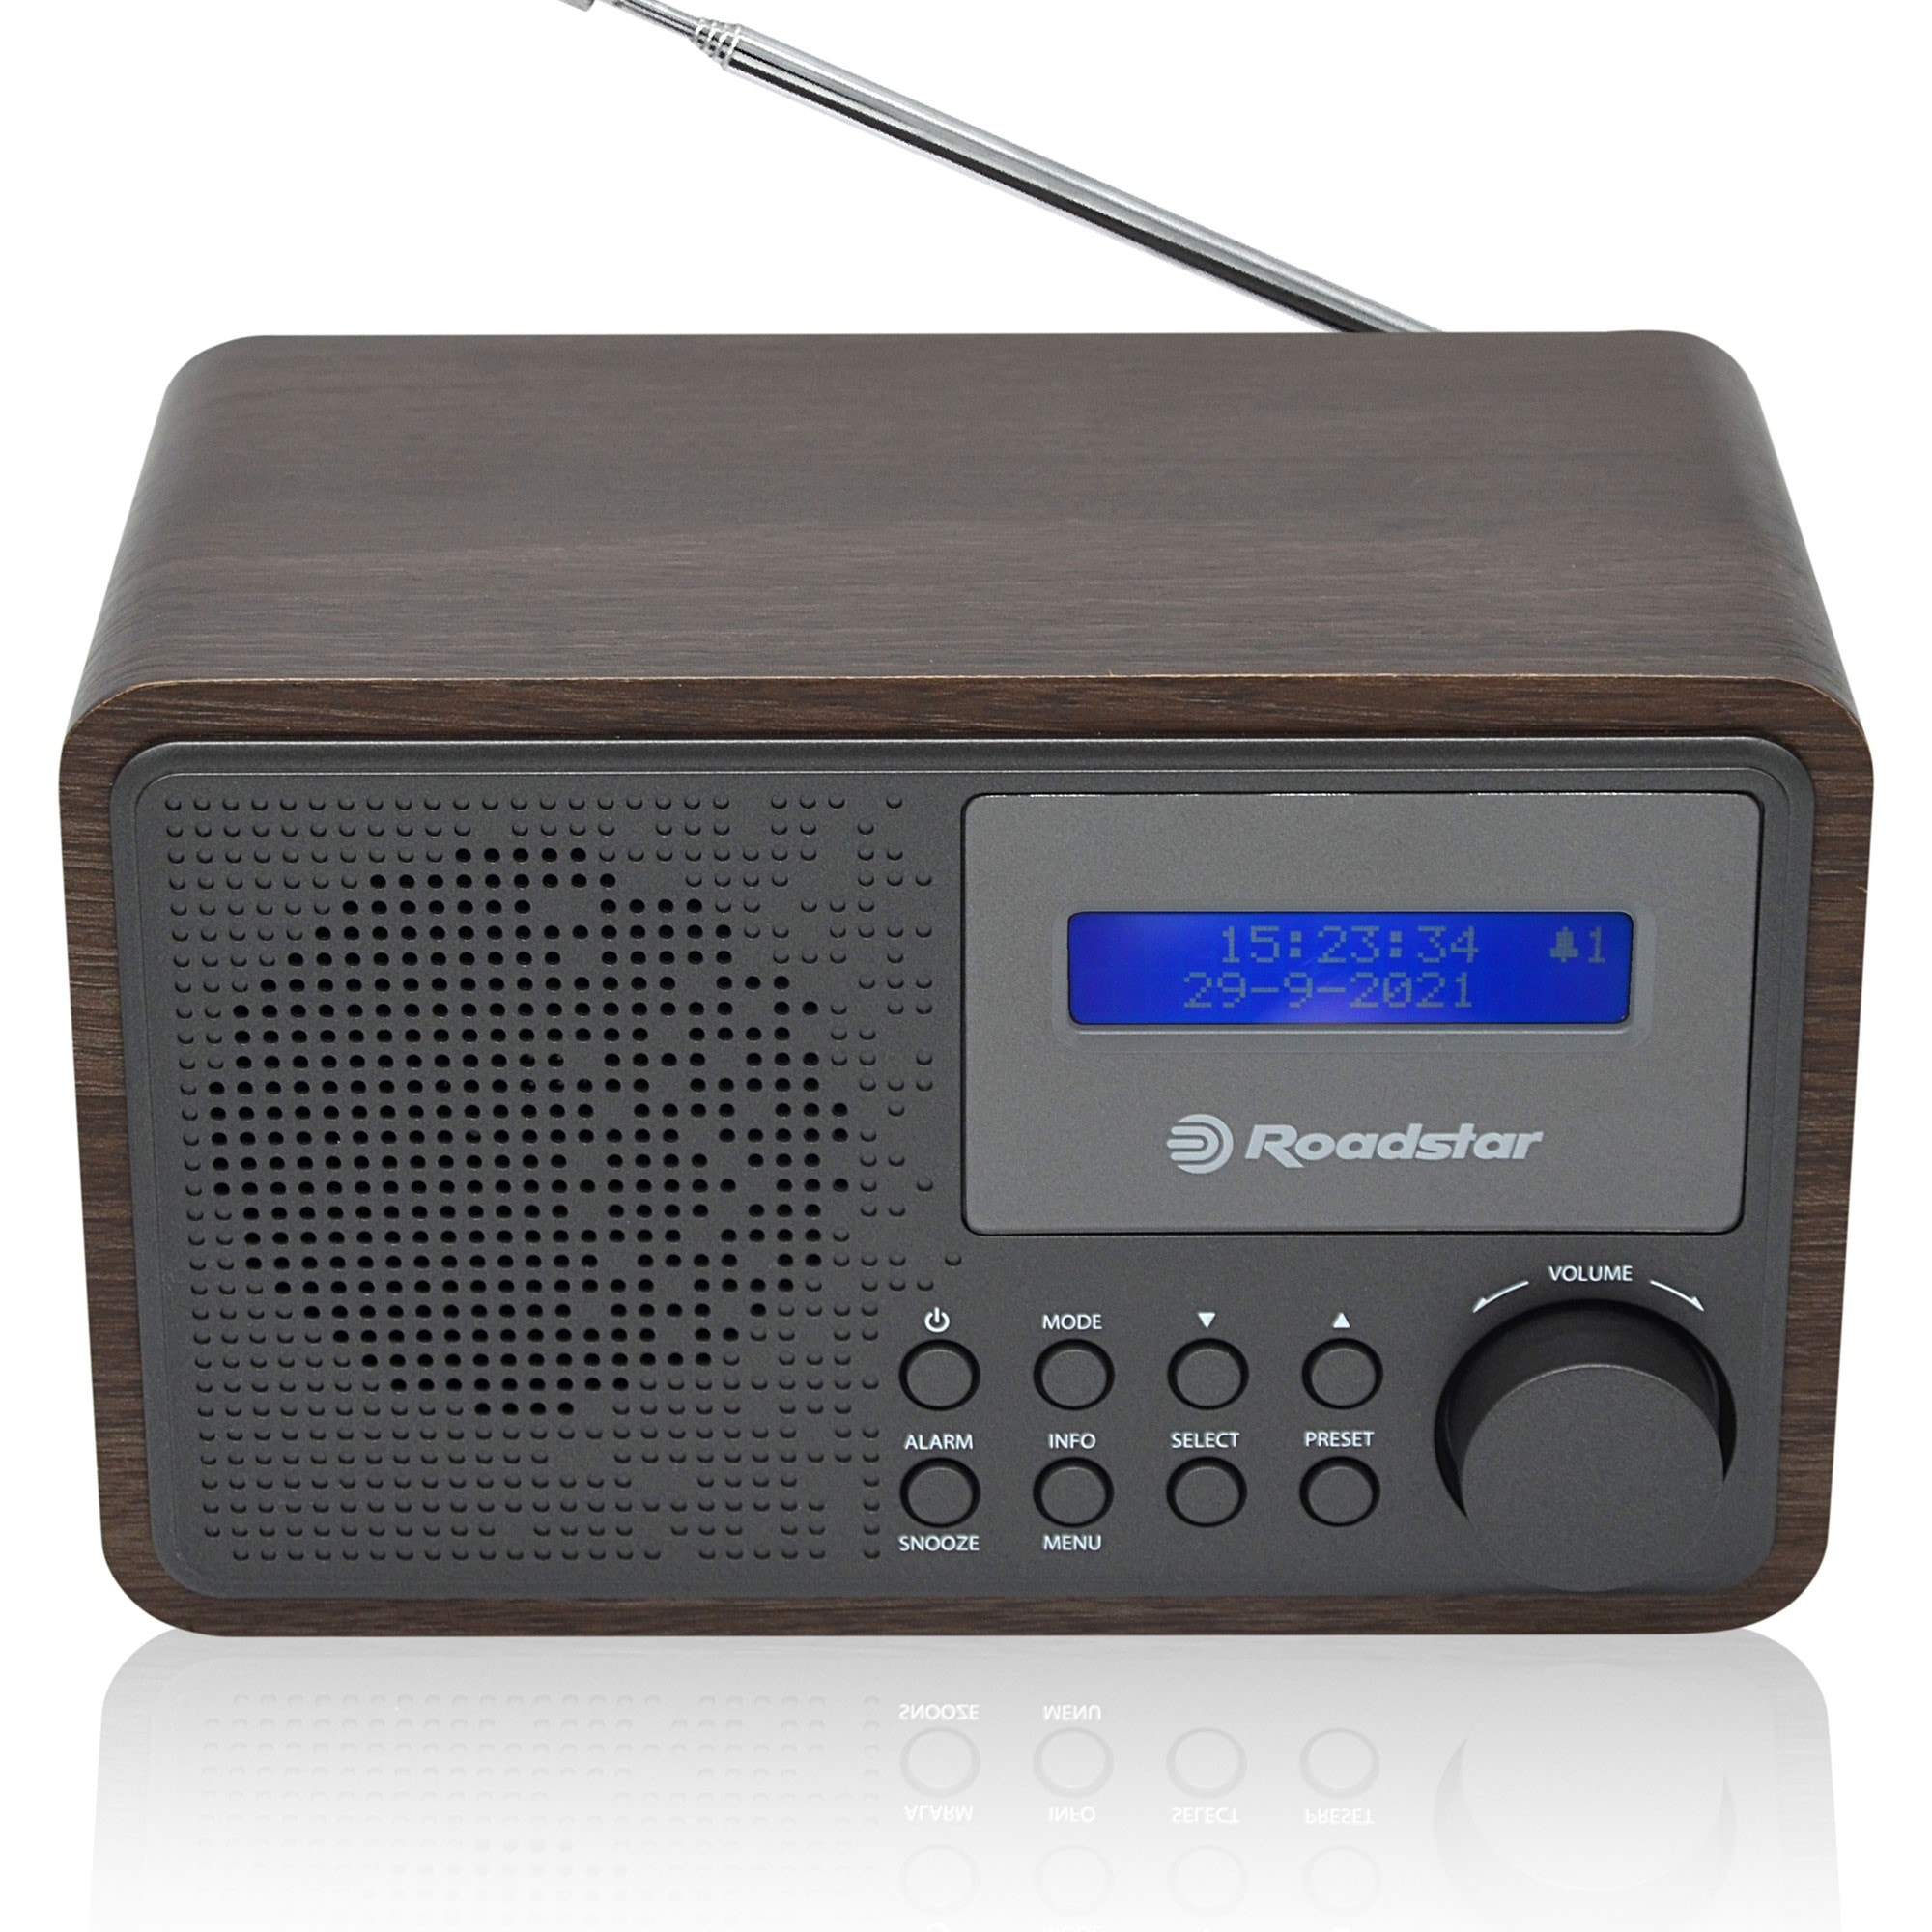 Radio Portable DAB / DAB+ / FM, Lecteur CD-MP3, Cassette, USB, Télécommande  Noir RoadstarRCR-779D+/BK au meilleur prix